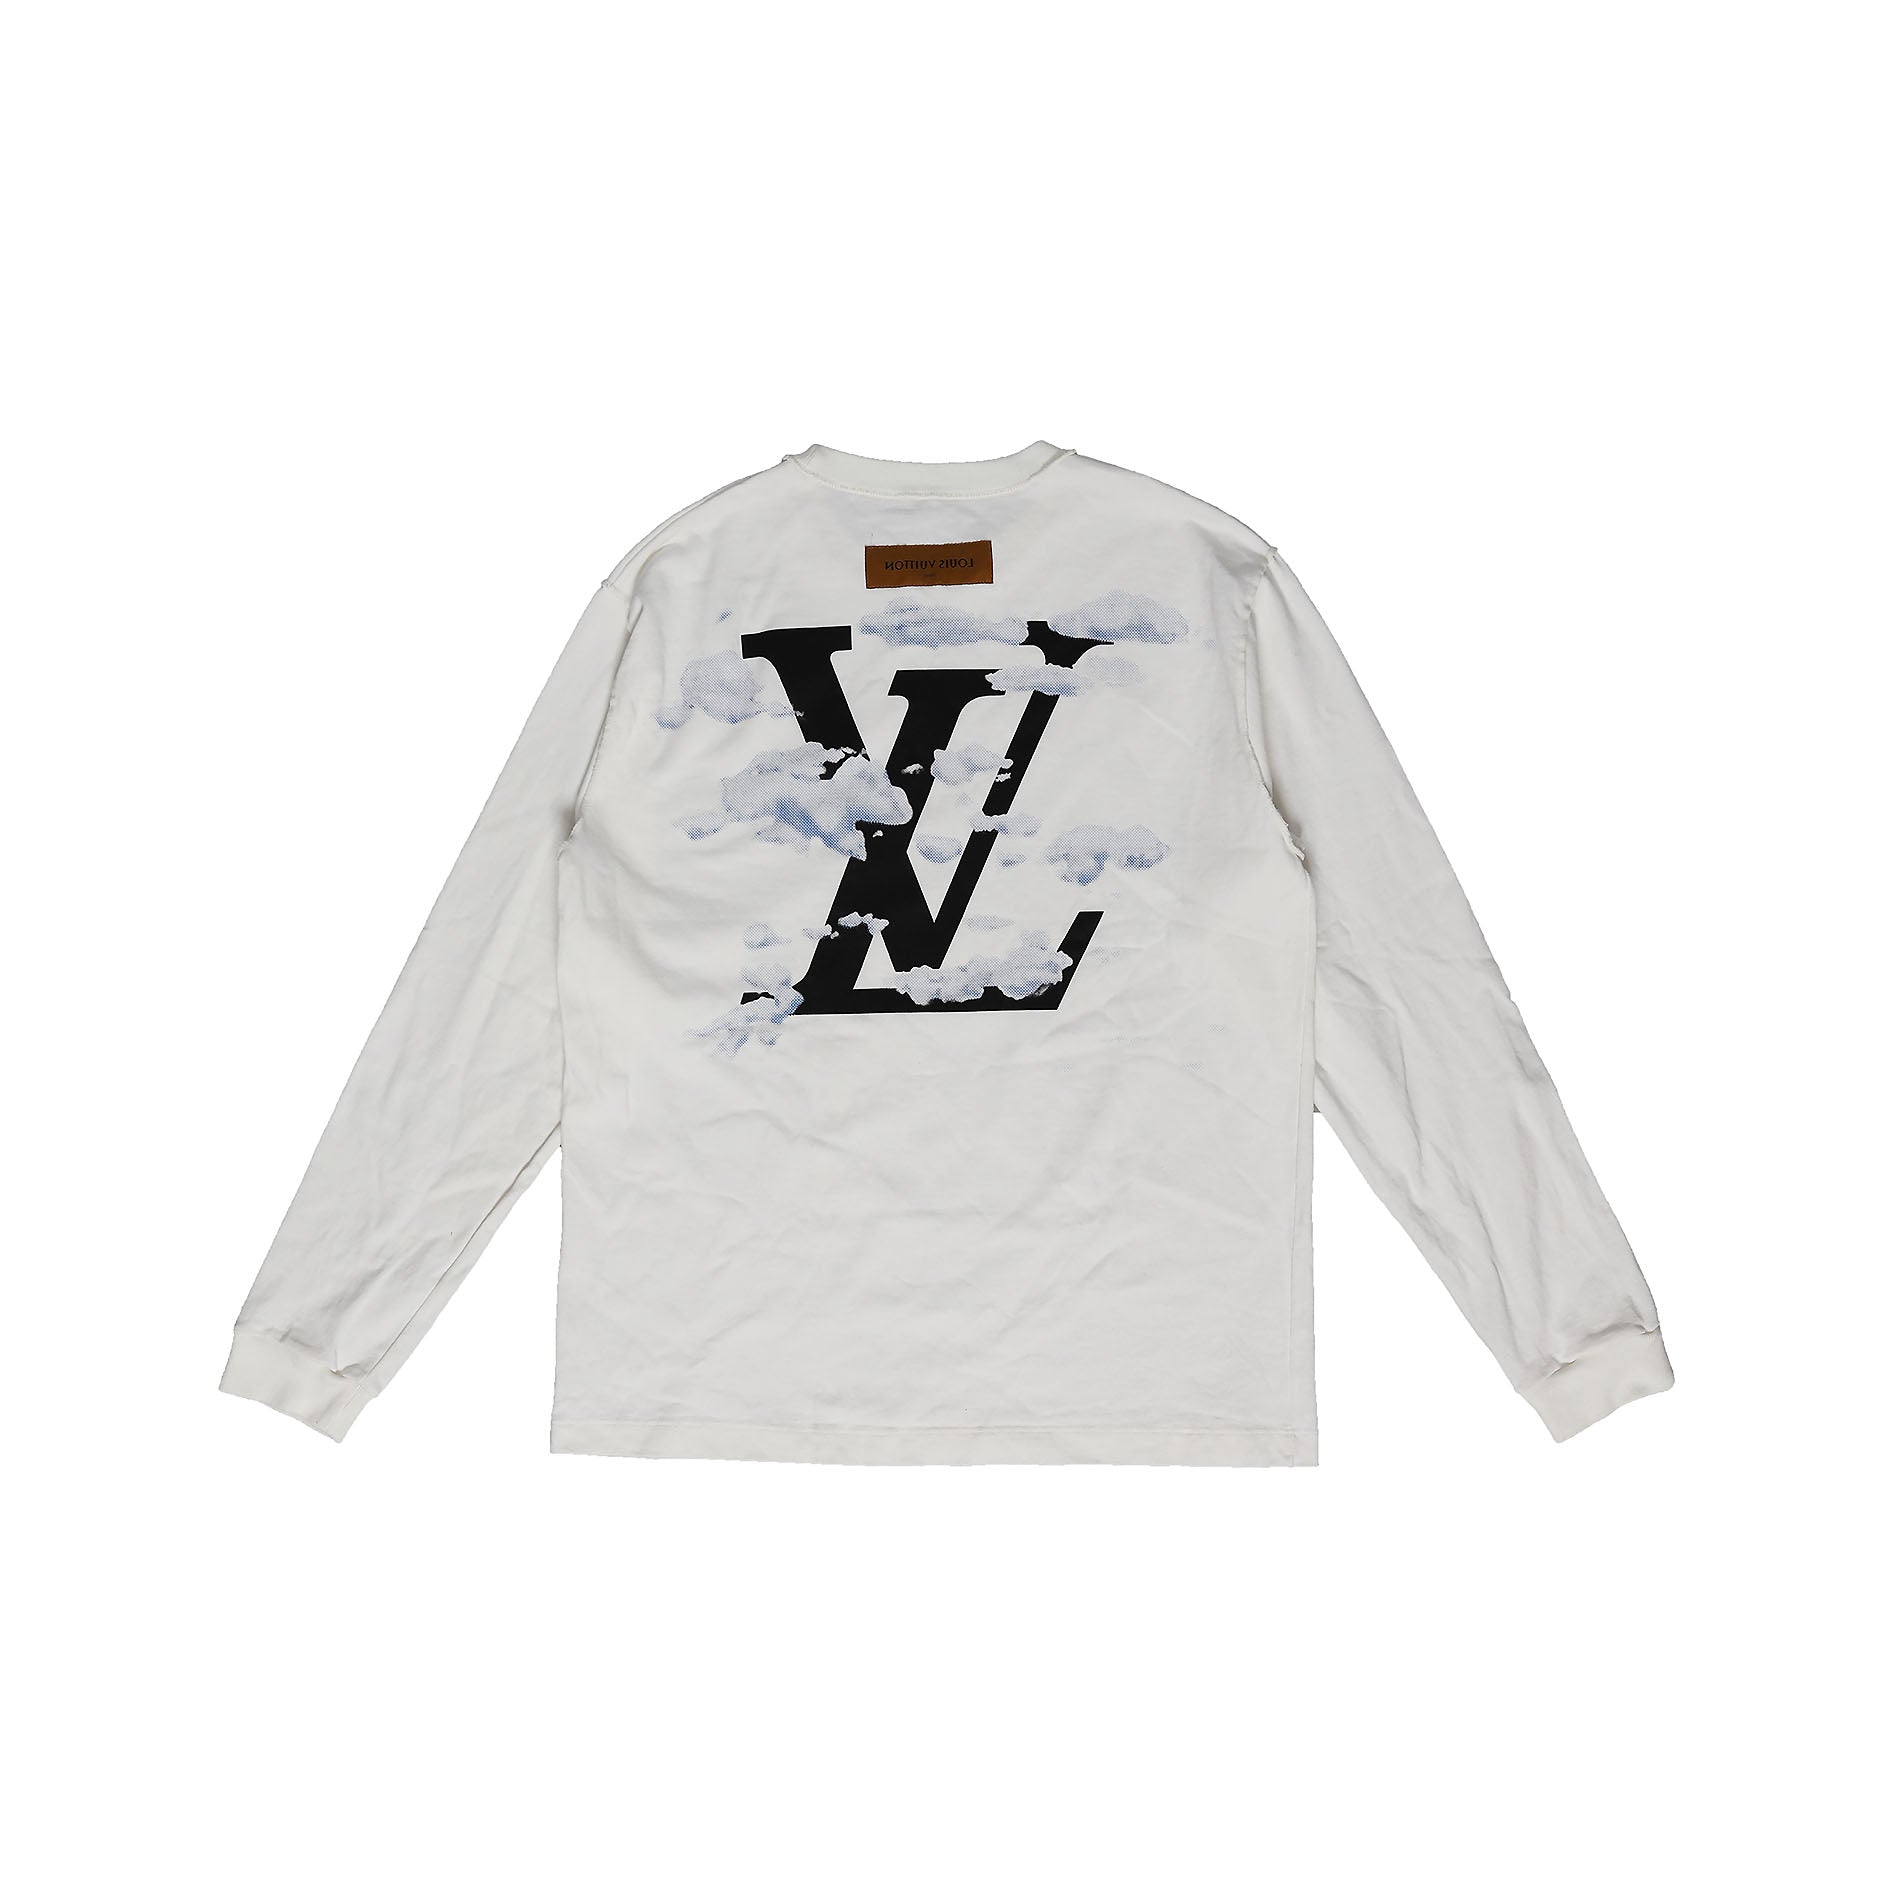 W2C Louis Vuitton 2020 Spring Menswear Equipe Uniform Shirt : r